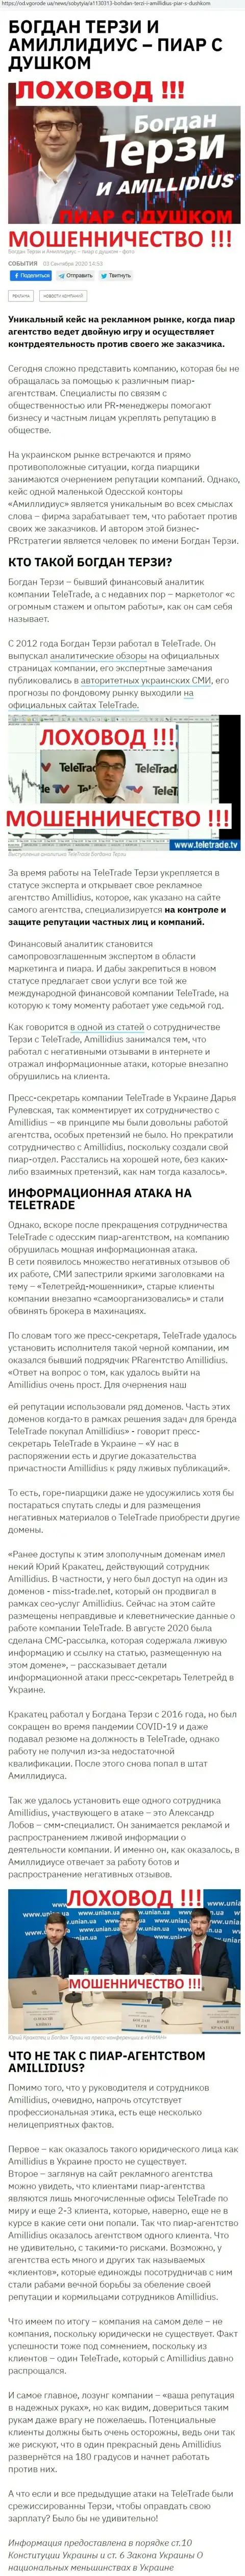 Терзи Богдан сомнительный партнер, информация со слов уже бывшего работника пиар фирмы Амиллидиус